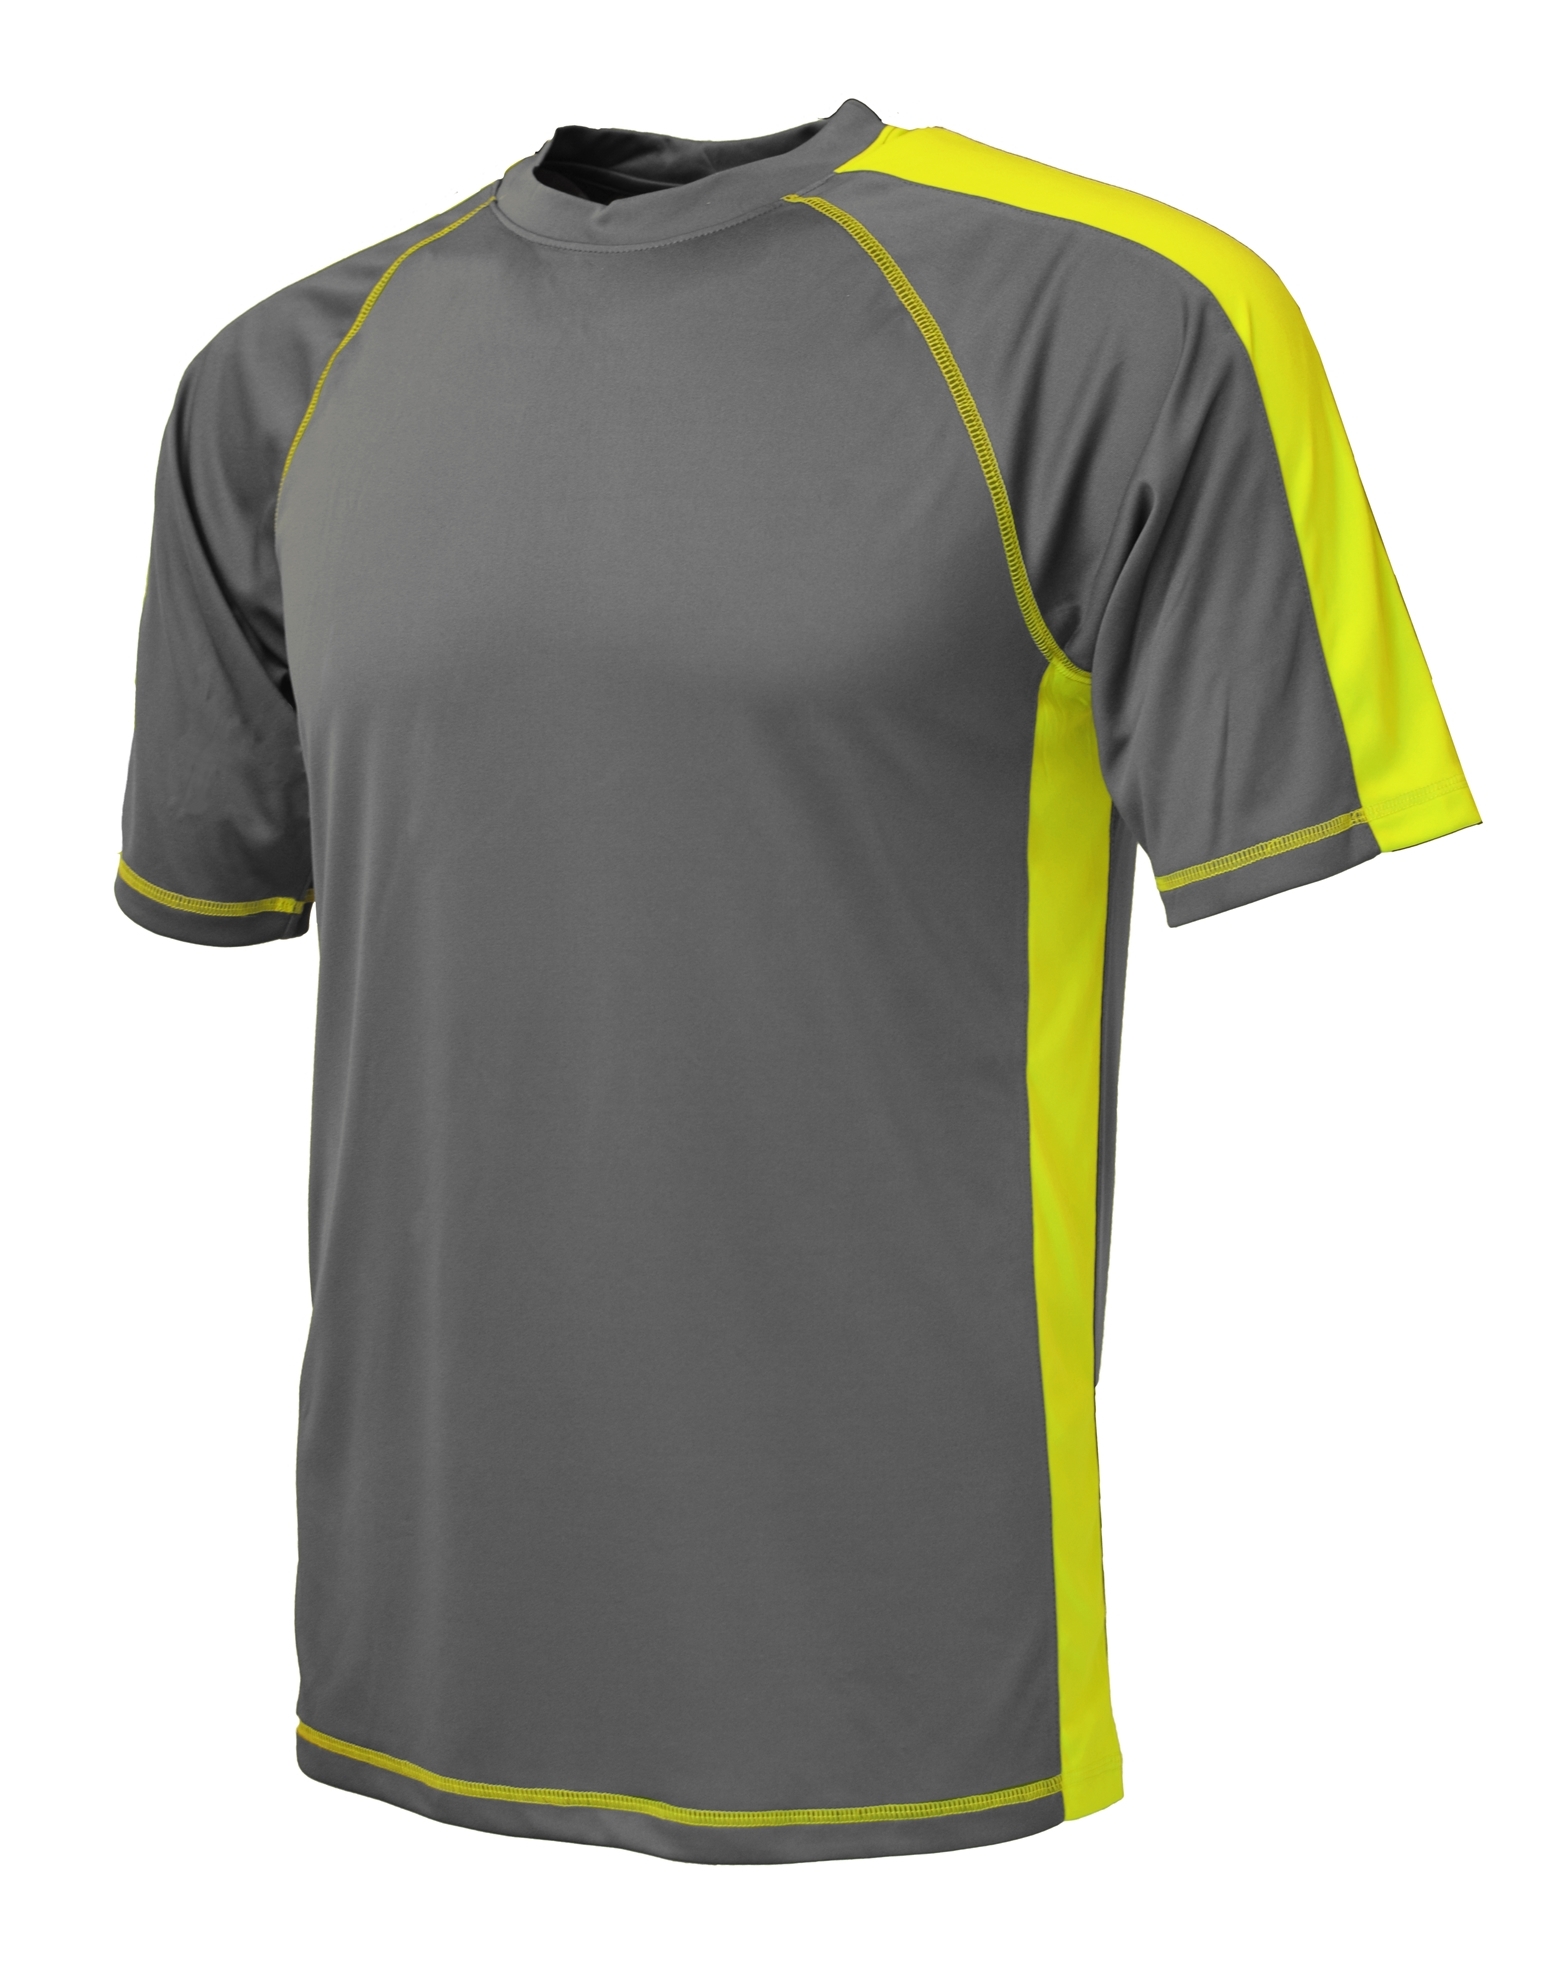 BAW Athletic Wear XT80Y - Youth XT Sideline T-Shirt